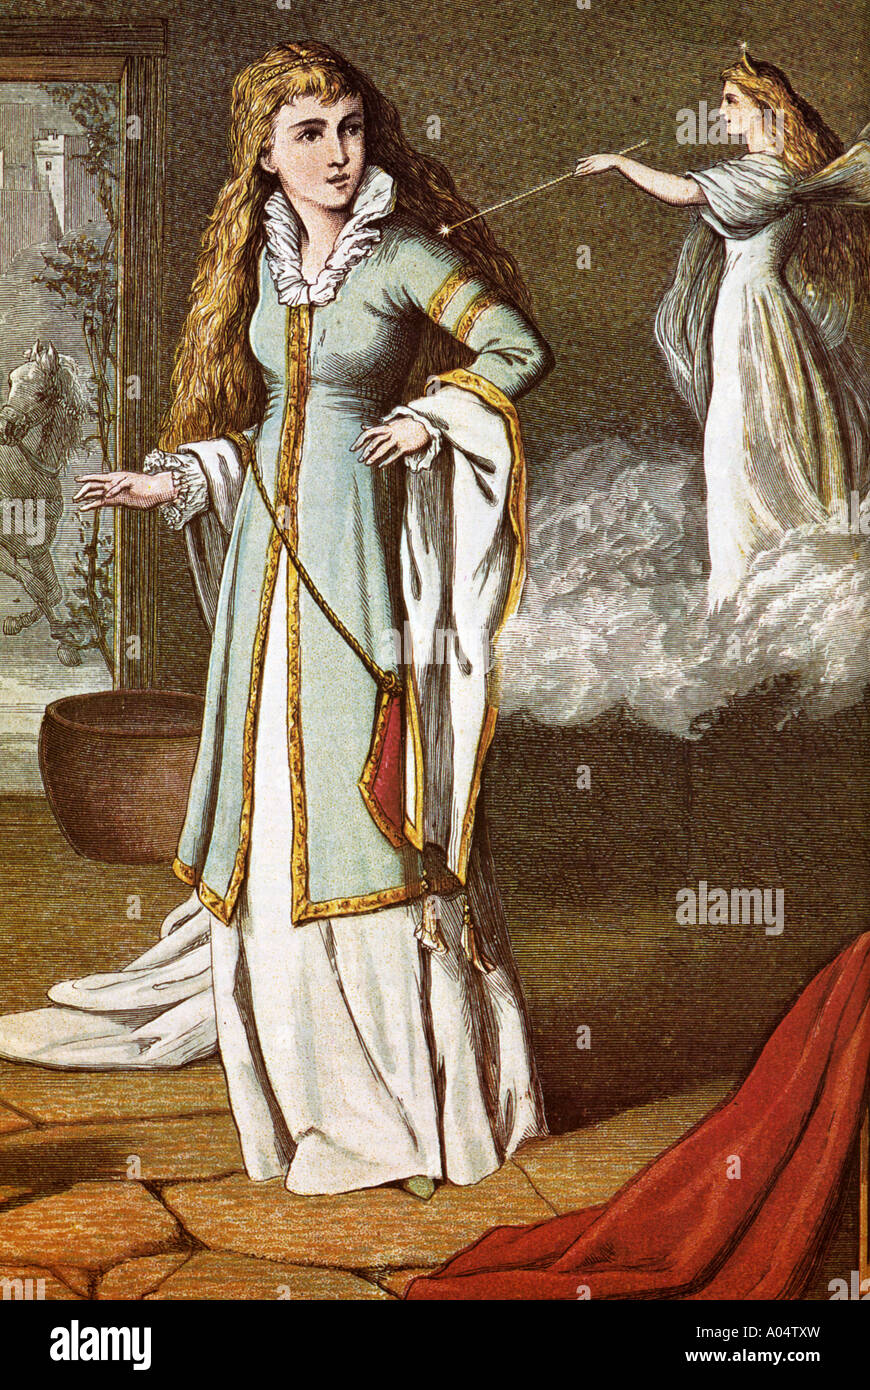 La fée marraine de Cendrillon Cendrillon touche avec sa baguette dans cette illustration 1876 Banque D'Images